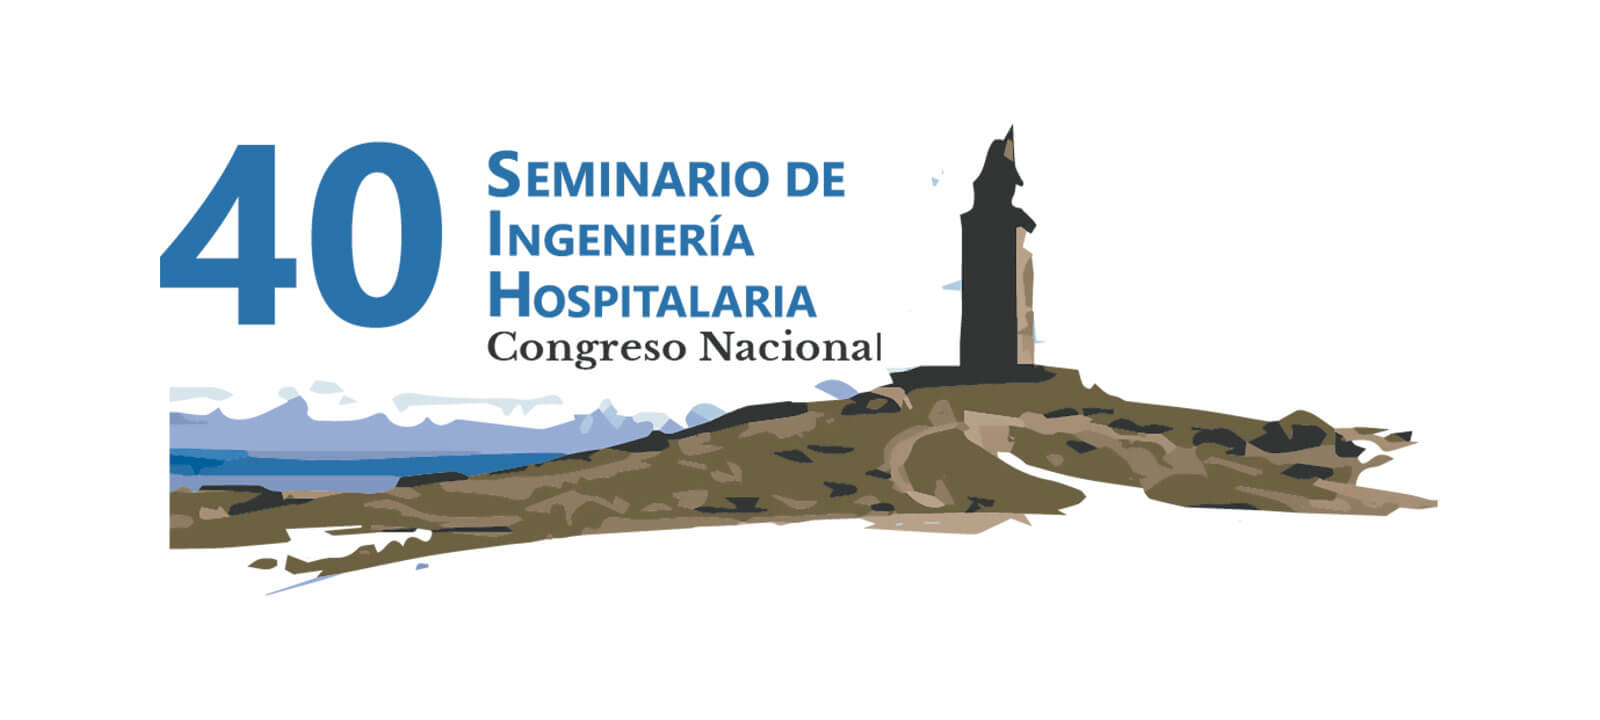 Los próximos días 4, 5 y 6 de octubre se celebrará en A Coruña el 40 Seminario de Ingeniería Hospitalaria - Congreso Nacional.